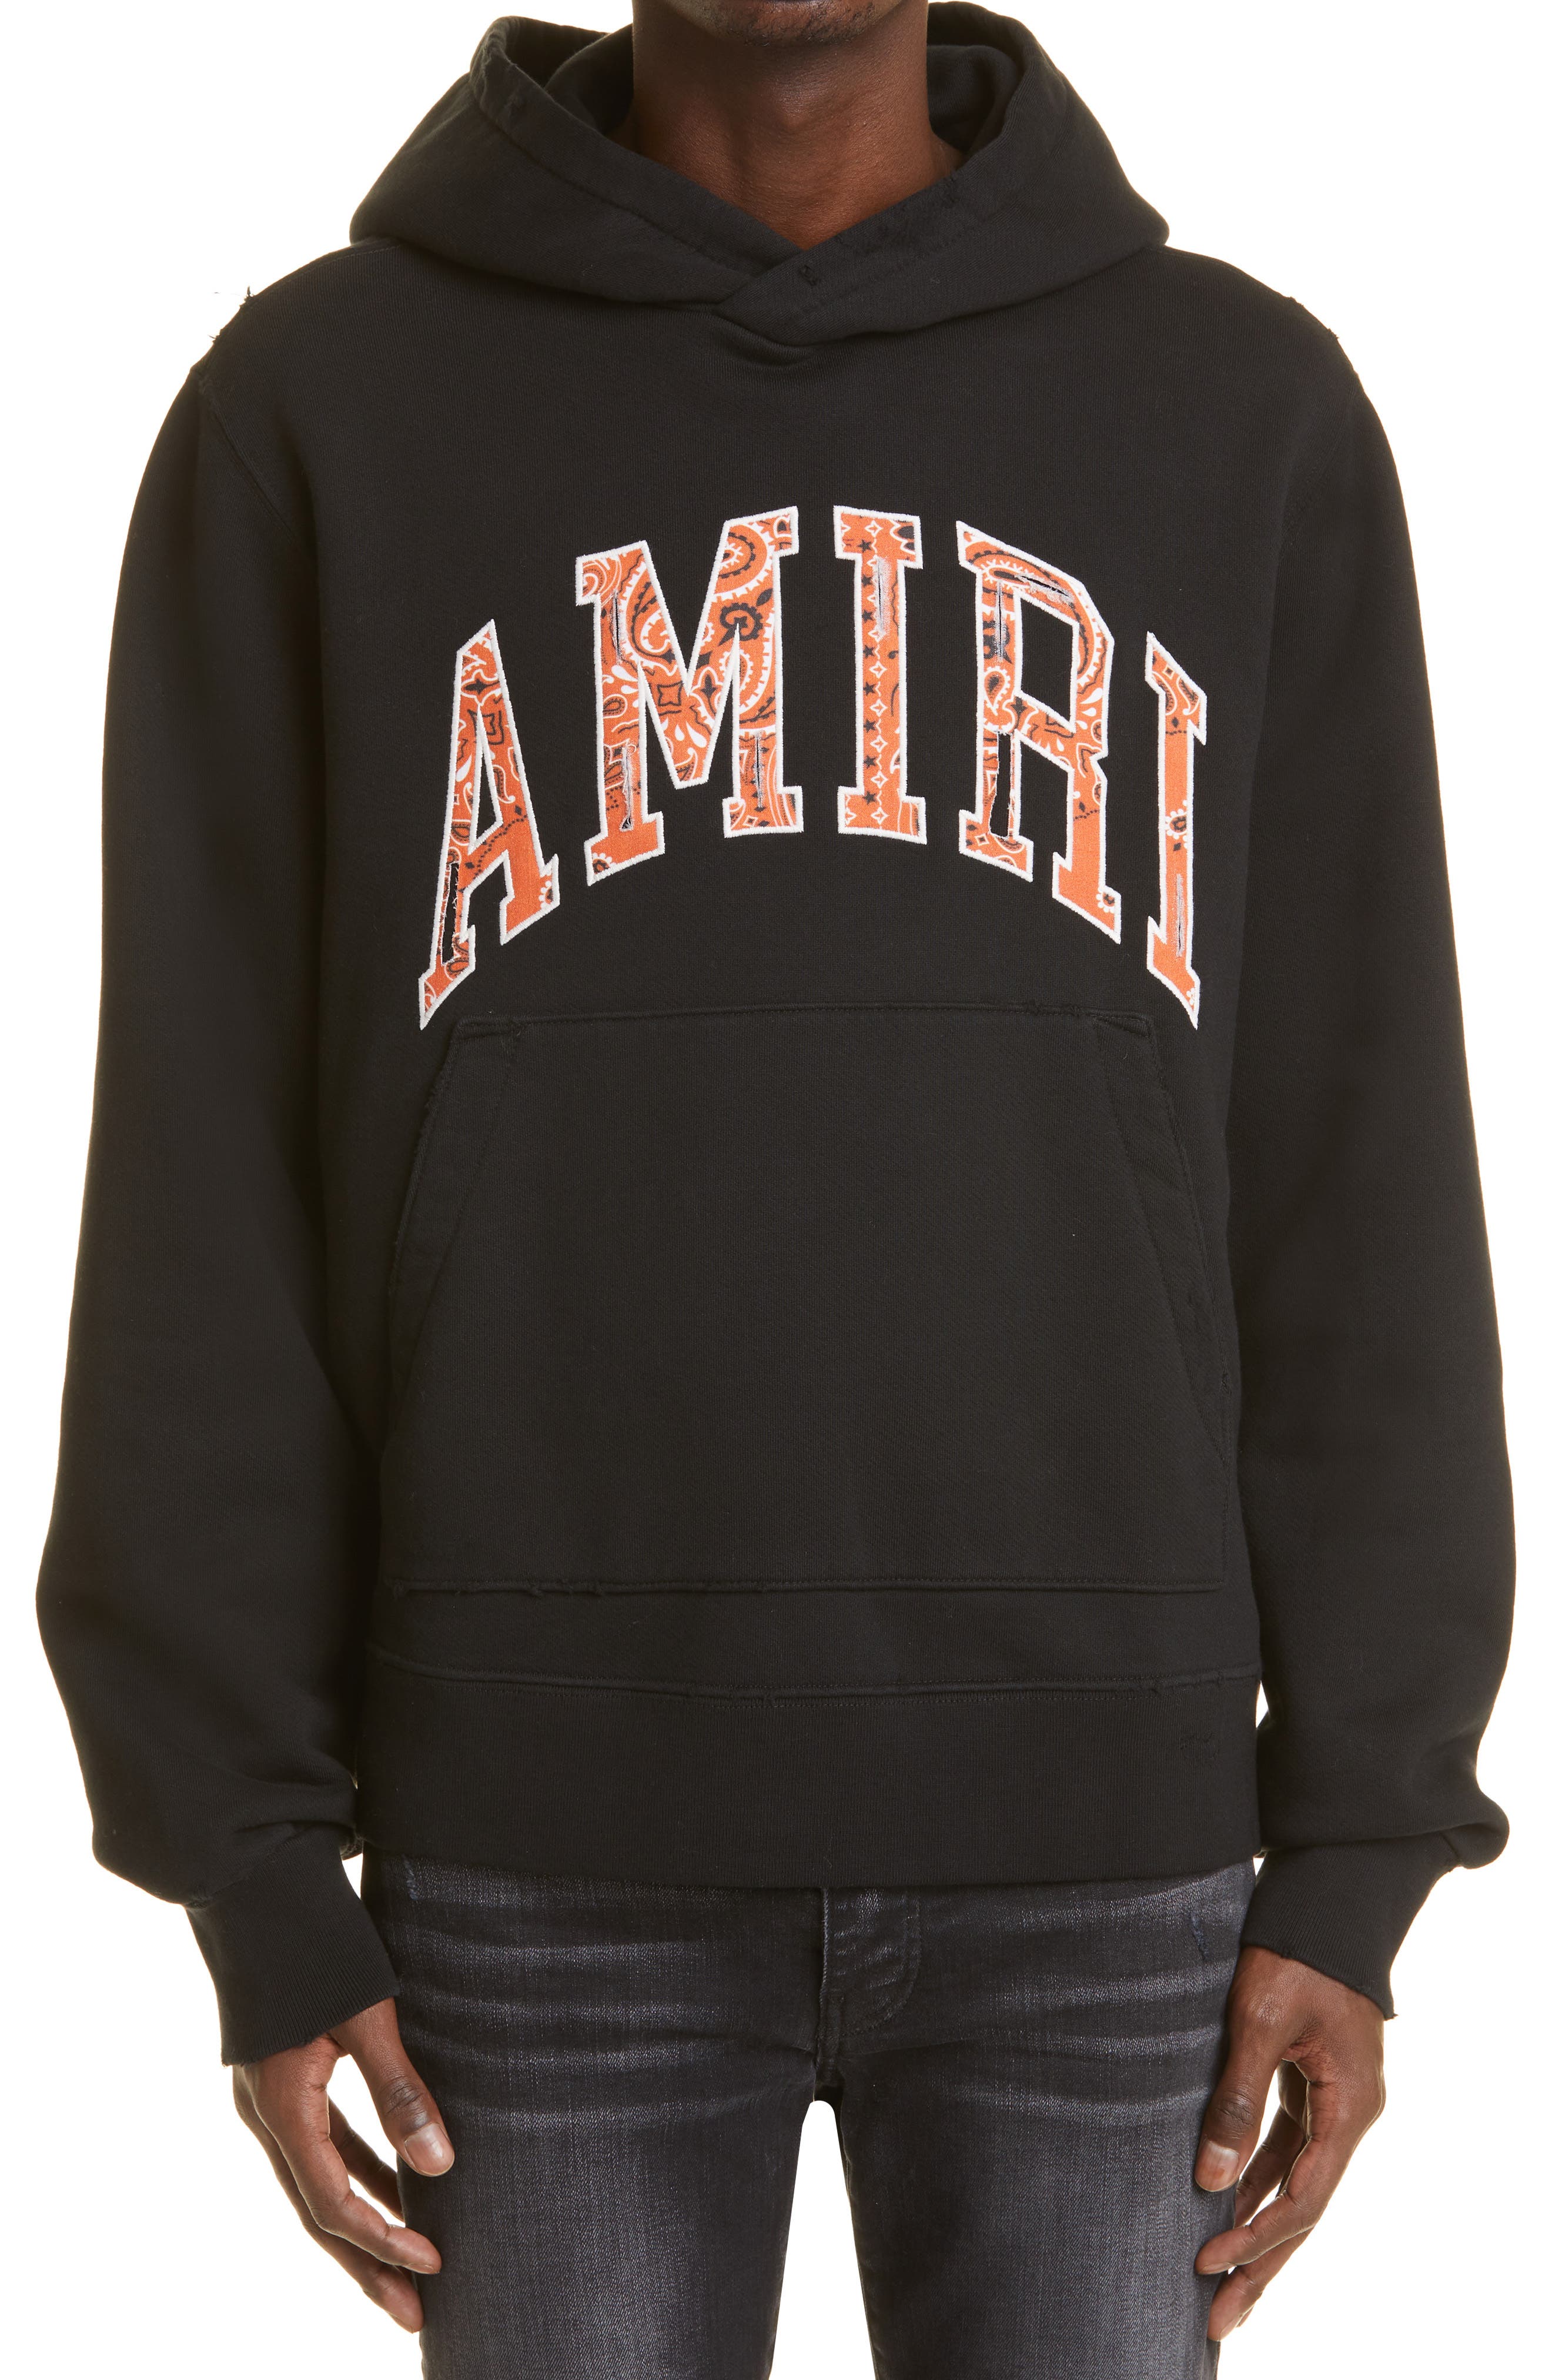 AMIRI Bandana Applique Pullover Hoodie in Black /Orange at Nordstrom, Size Medium